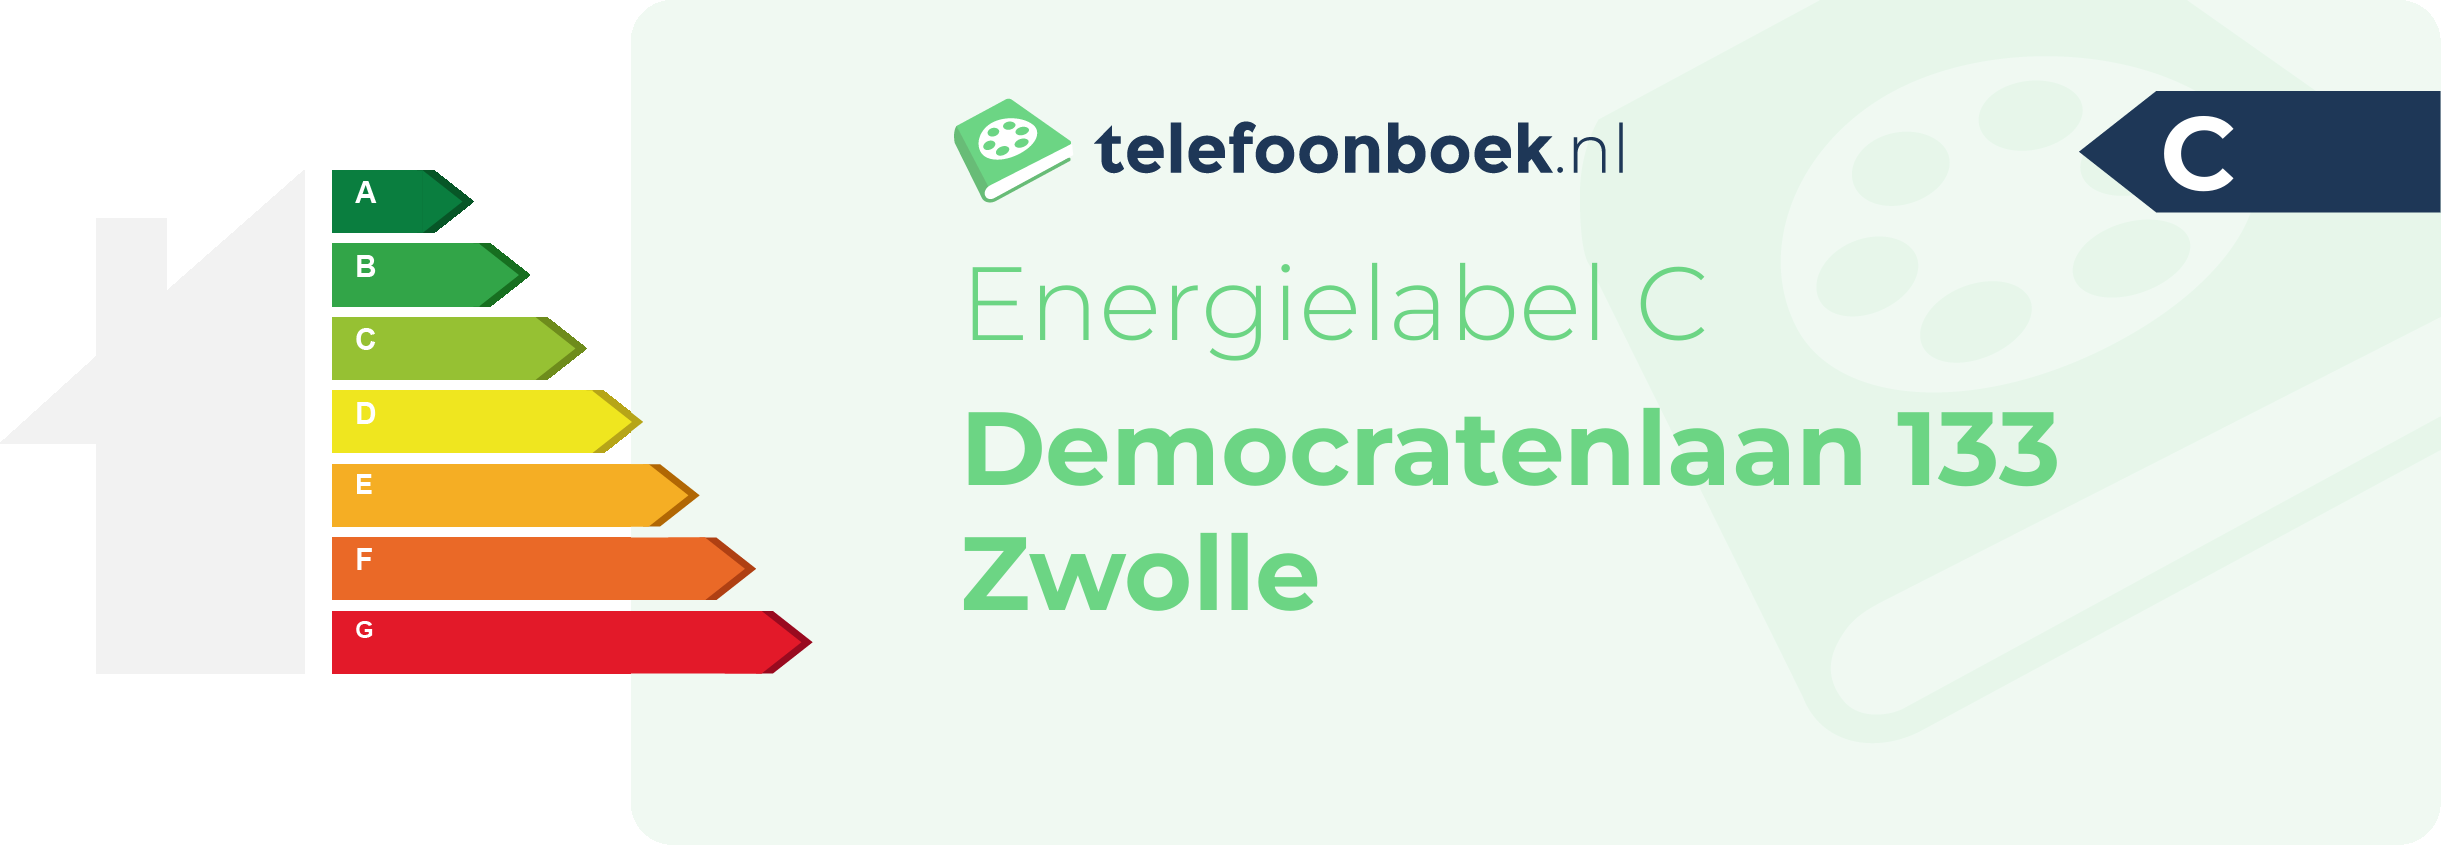 Energielabel Democratenlaan 133 Zwolle